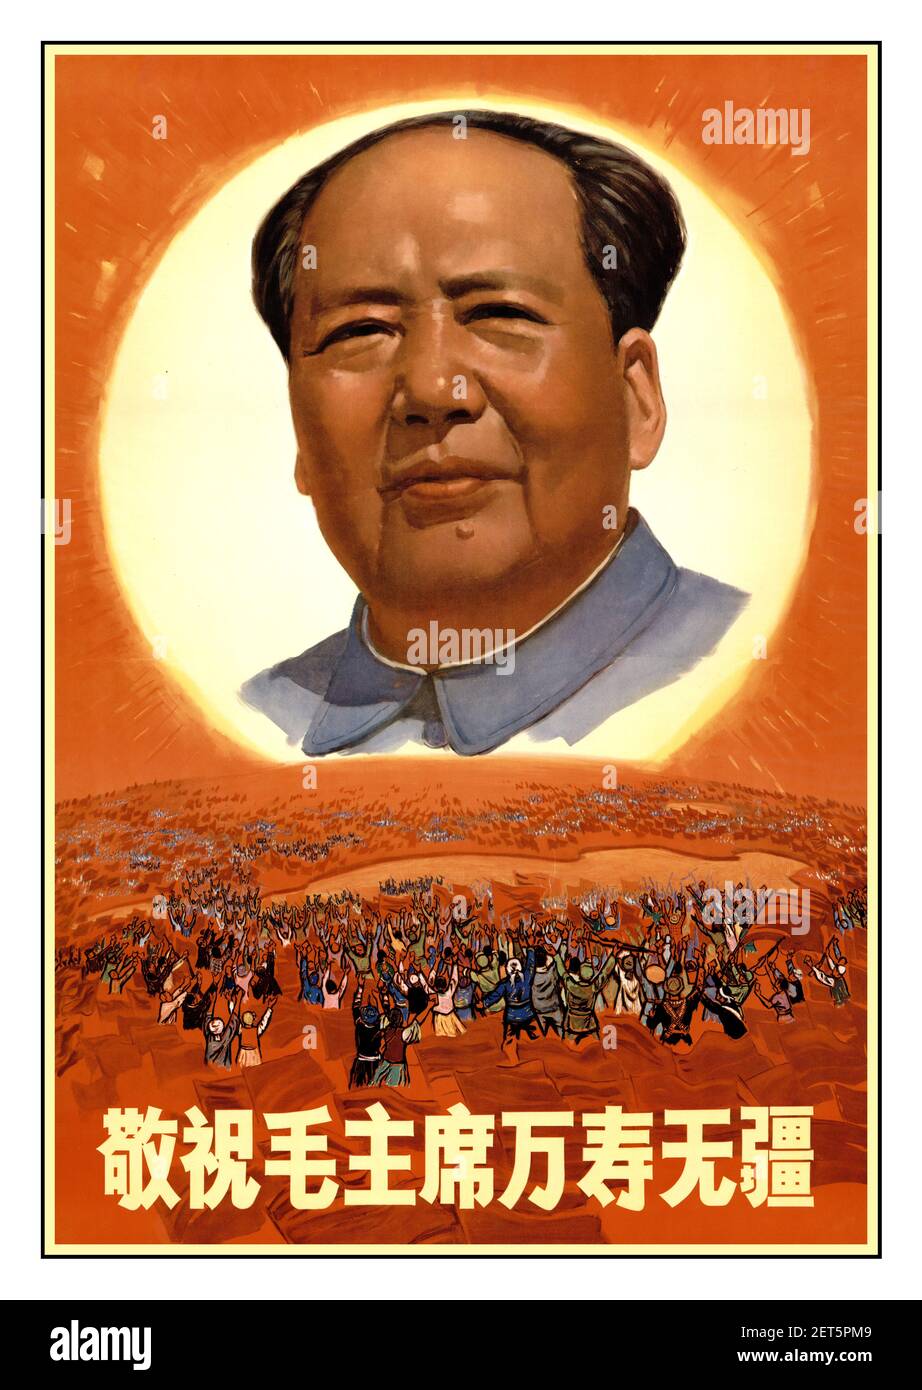 La rivoluzione culturale cinese degli anni ’60 ‘con tutto il rispetto, auguriamo al presidente Mao una lunga vita senza confini’ 1968 Presidente Mao tribute Mao Zedong (毛泽东) (1893-1976), uomo di stato Foto Stock